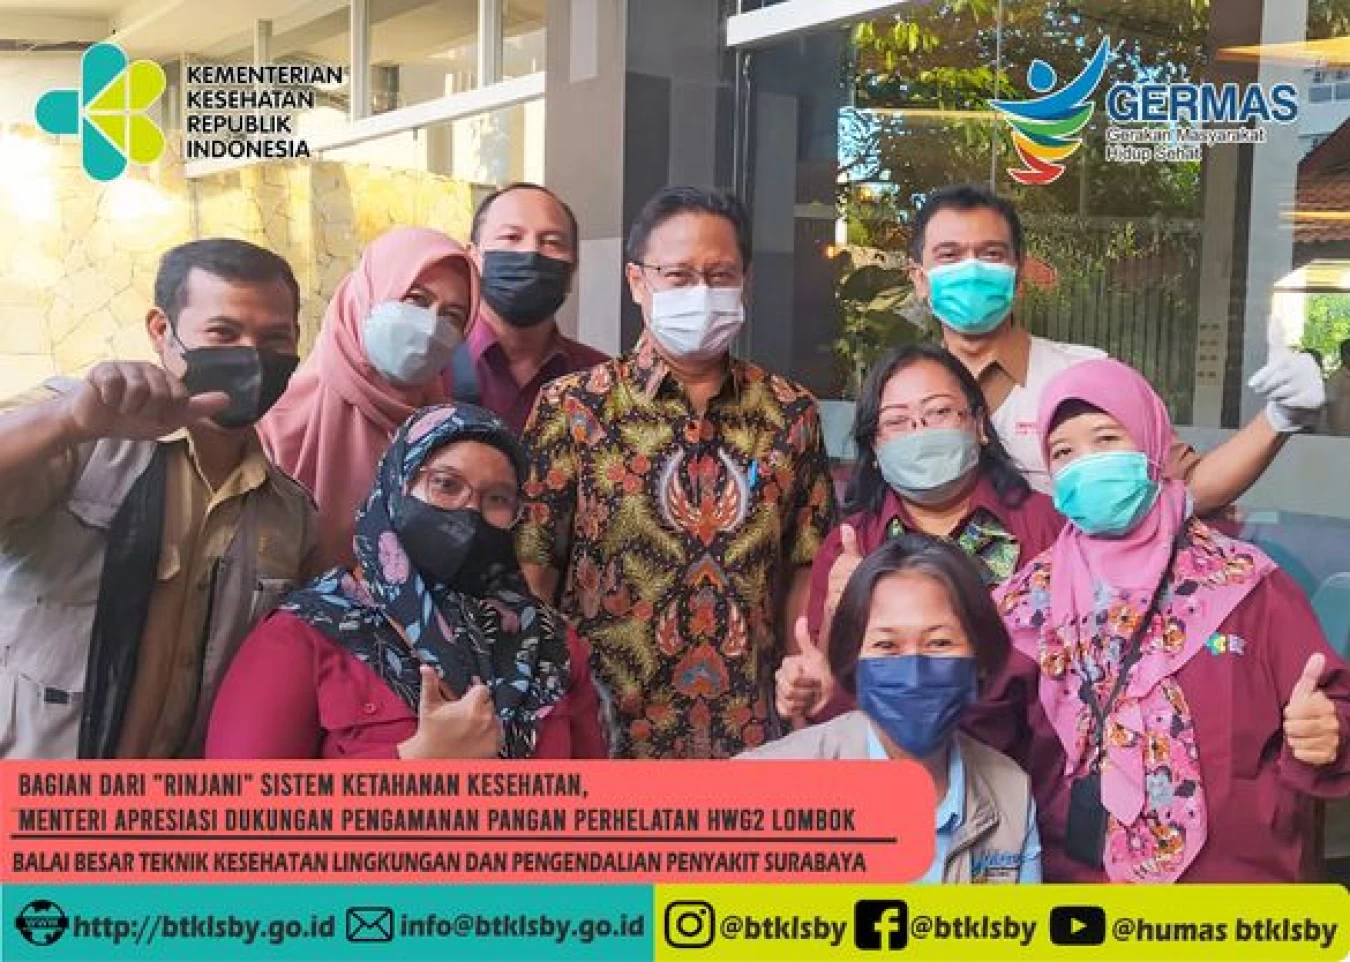 Bagian dari "Rinjani" Sistem Ketahanan Kesehatan Menteri Apresiasi Dukungan Pengamanan Pangan Perhelatan HWG2 Lombok